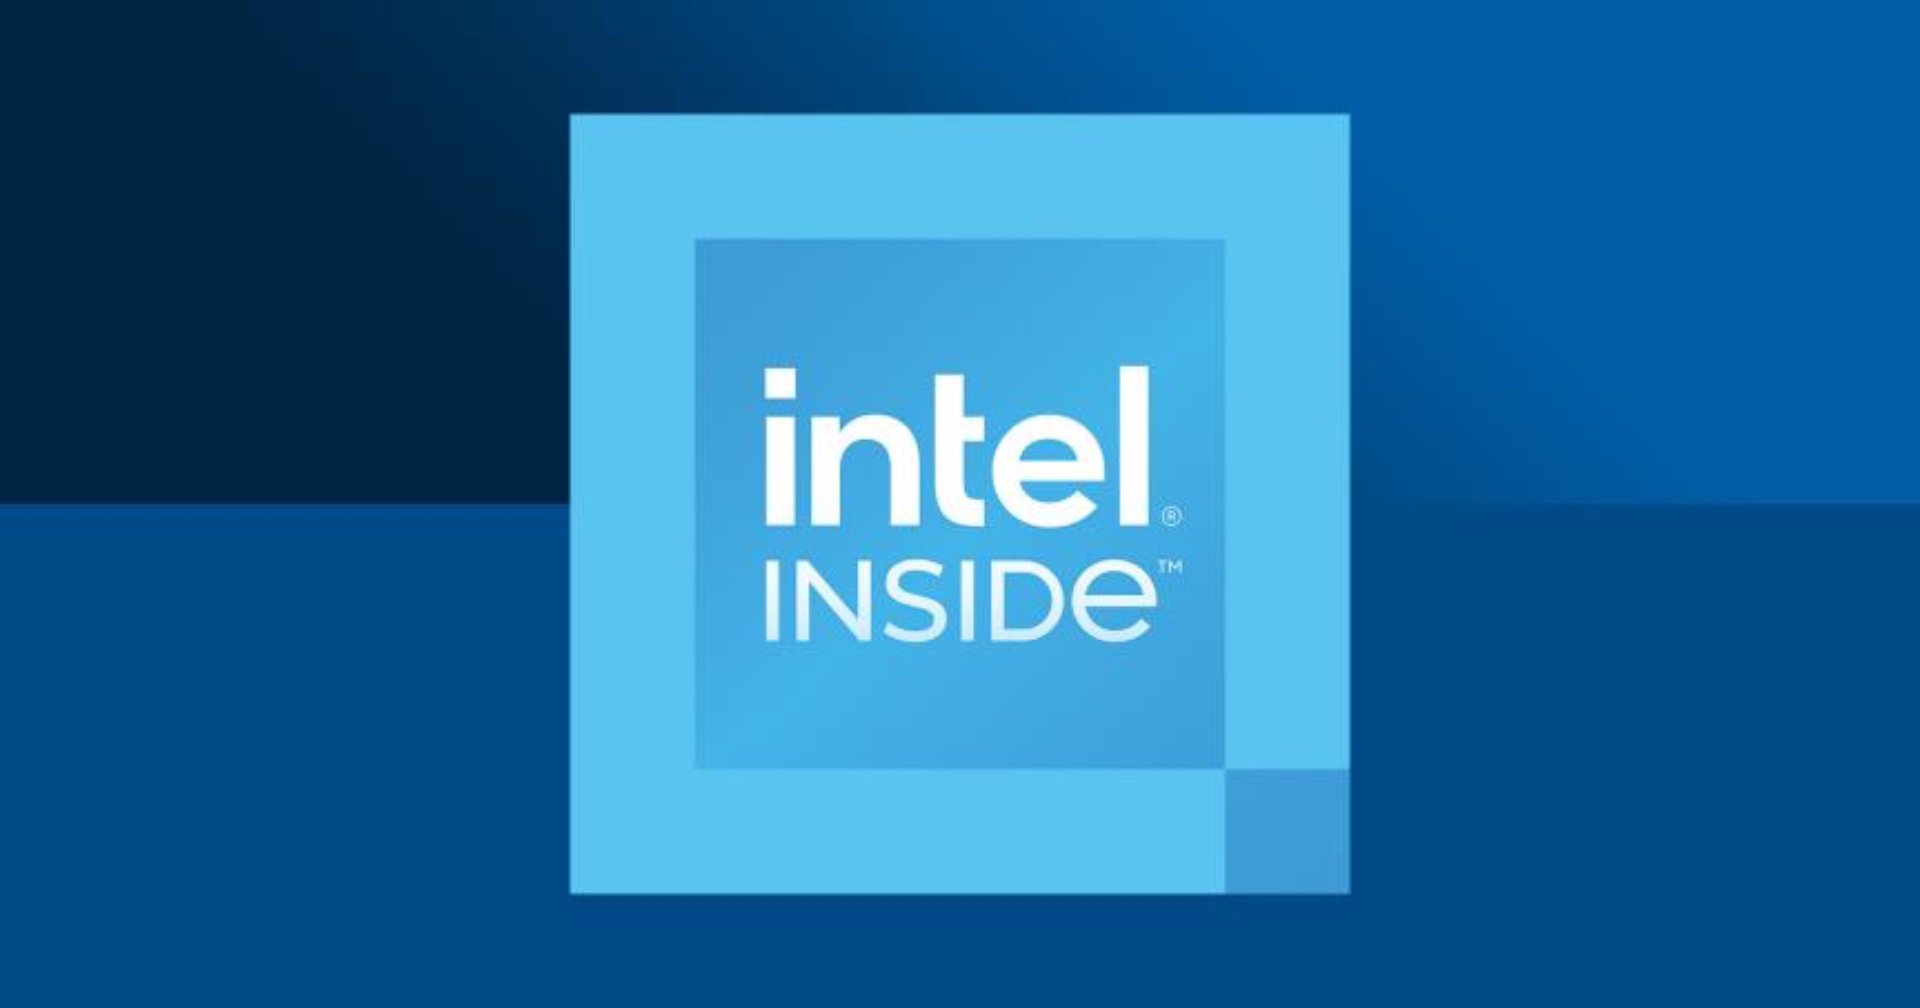 Intel เตรียมผลิตชิปส่งอุตสาหกรรมรถยนต์ที่กำลังขาดแคลนอย่างหนัก